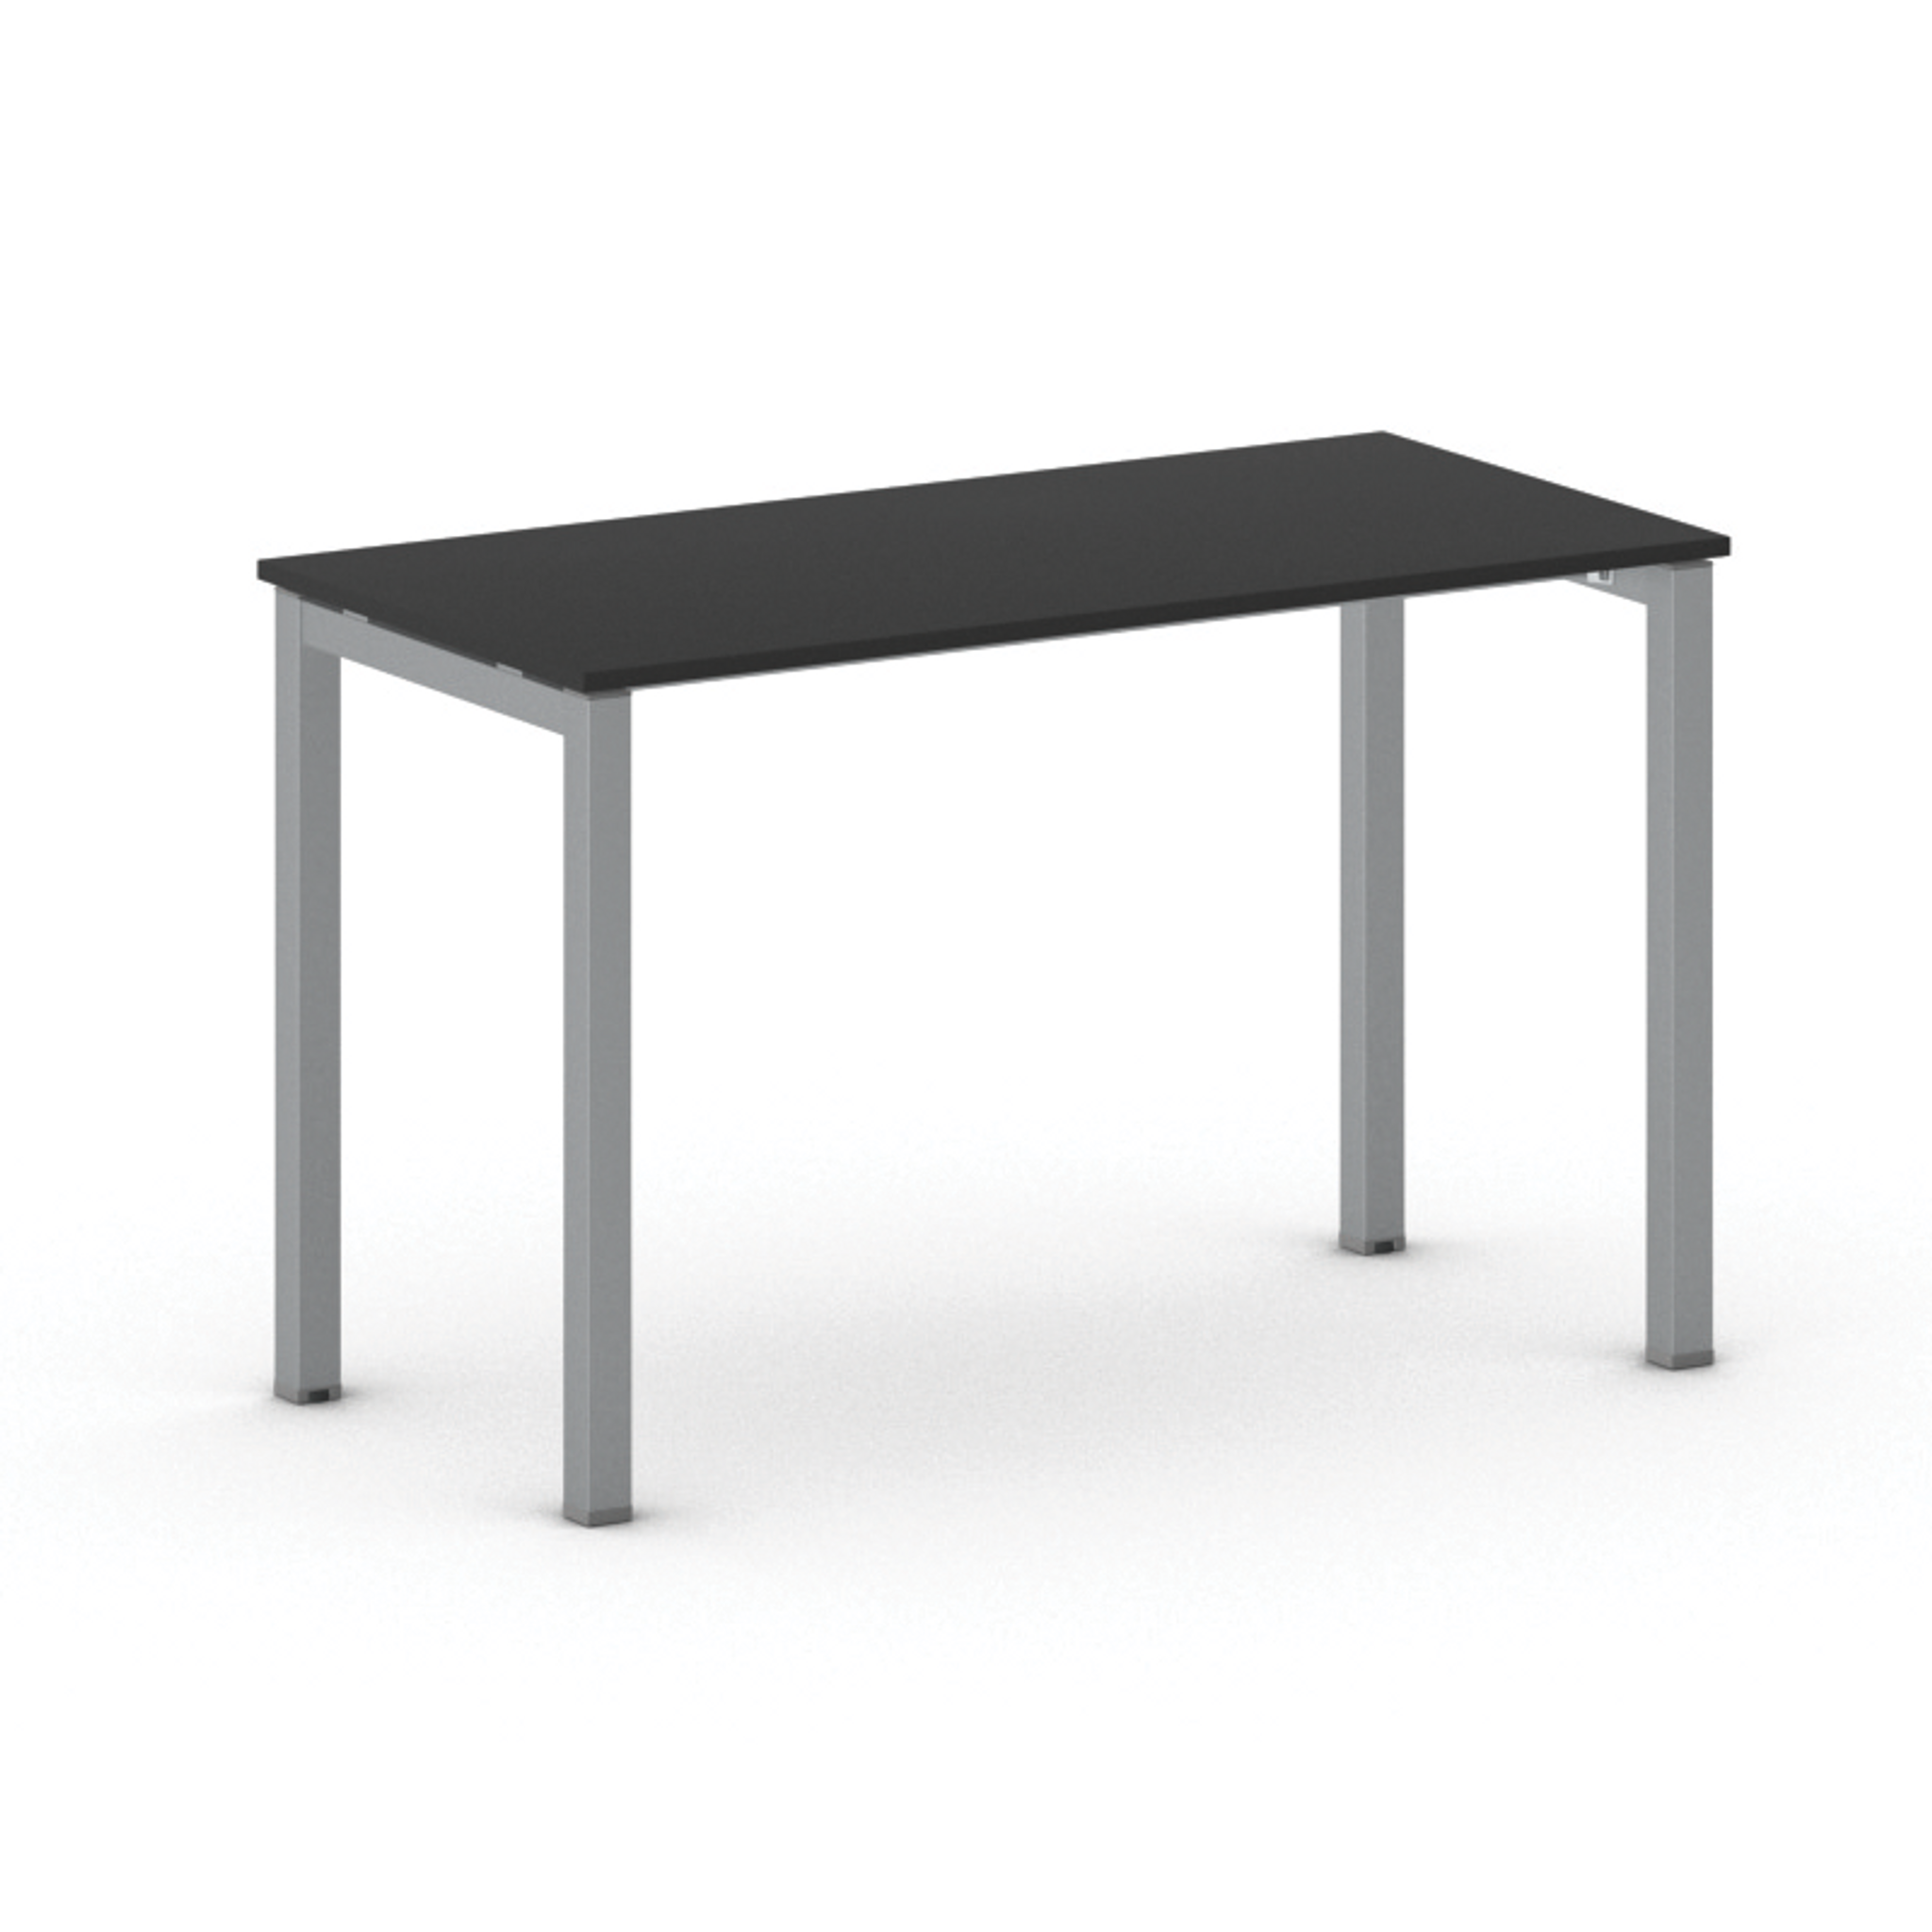 Stůl METAL 1200 x 600 x 750 mm, grafit